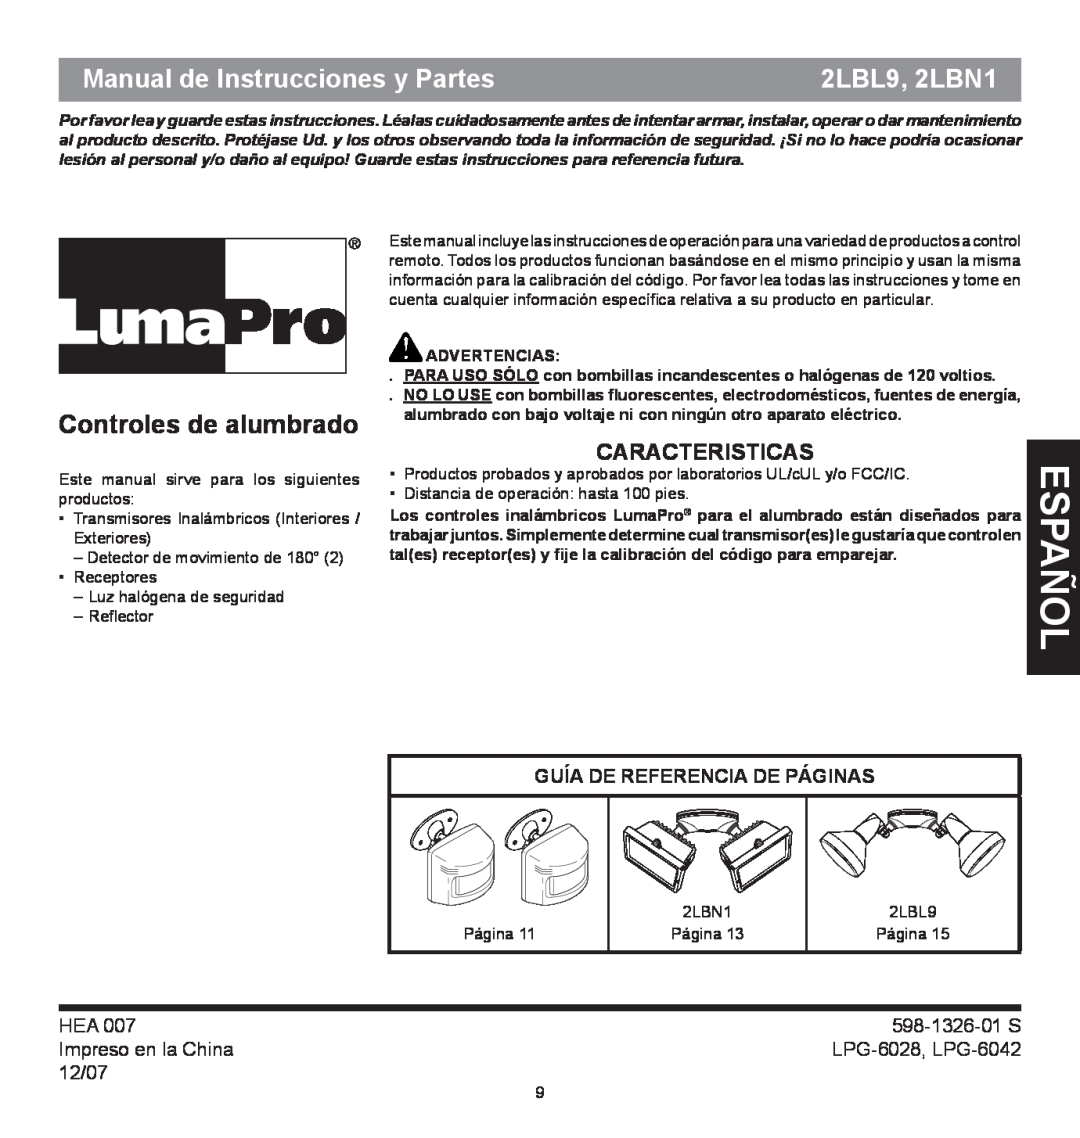 Heath Zenith 2LBN1 español, Manual de Instrucciones y Partes, Caracteristicas, Guía De Referencia De Páginas, 598-1326-01S 